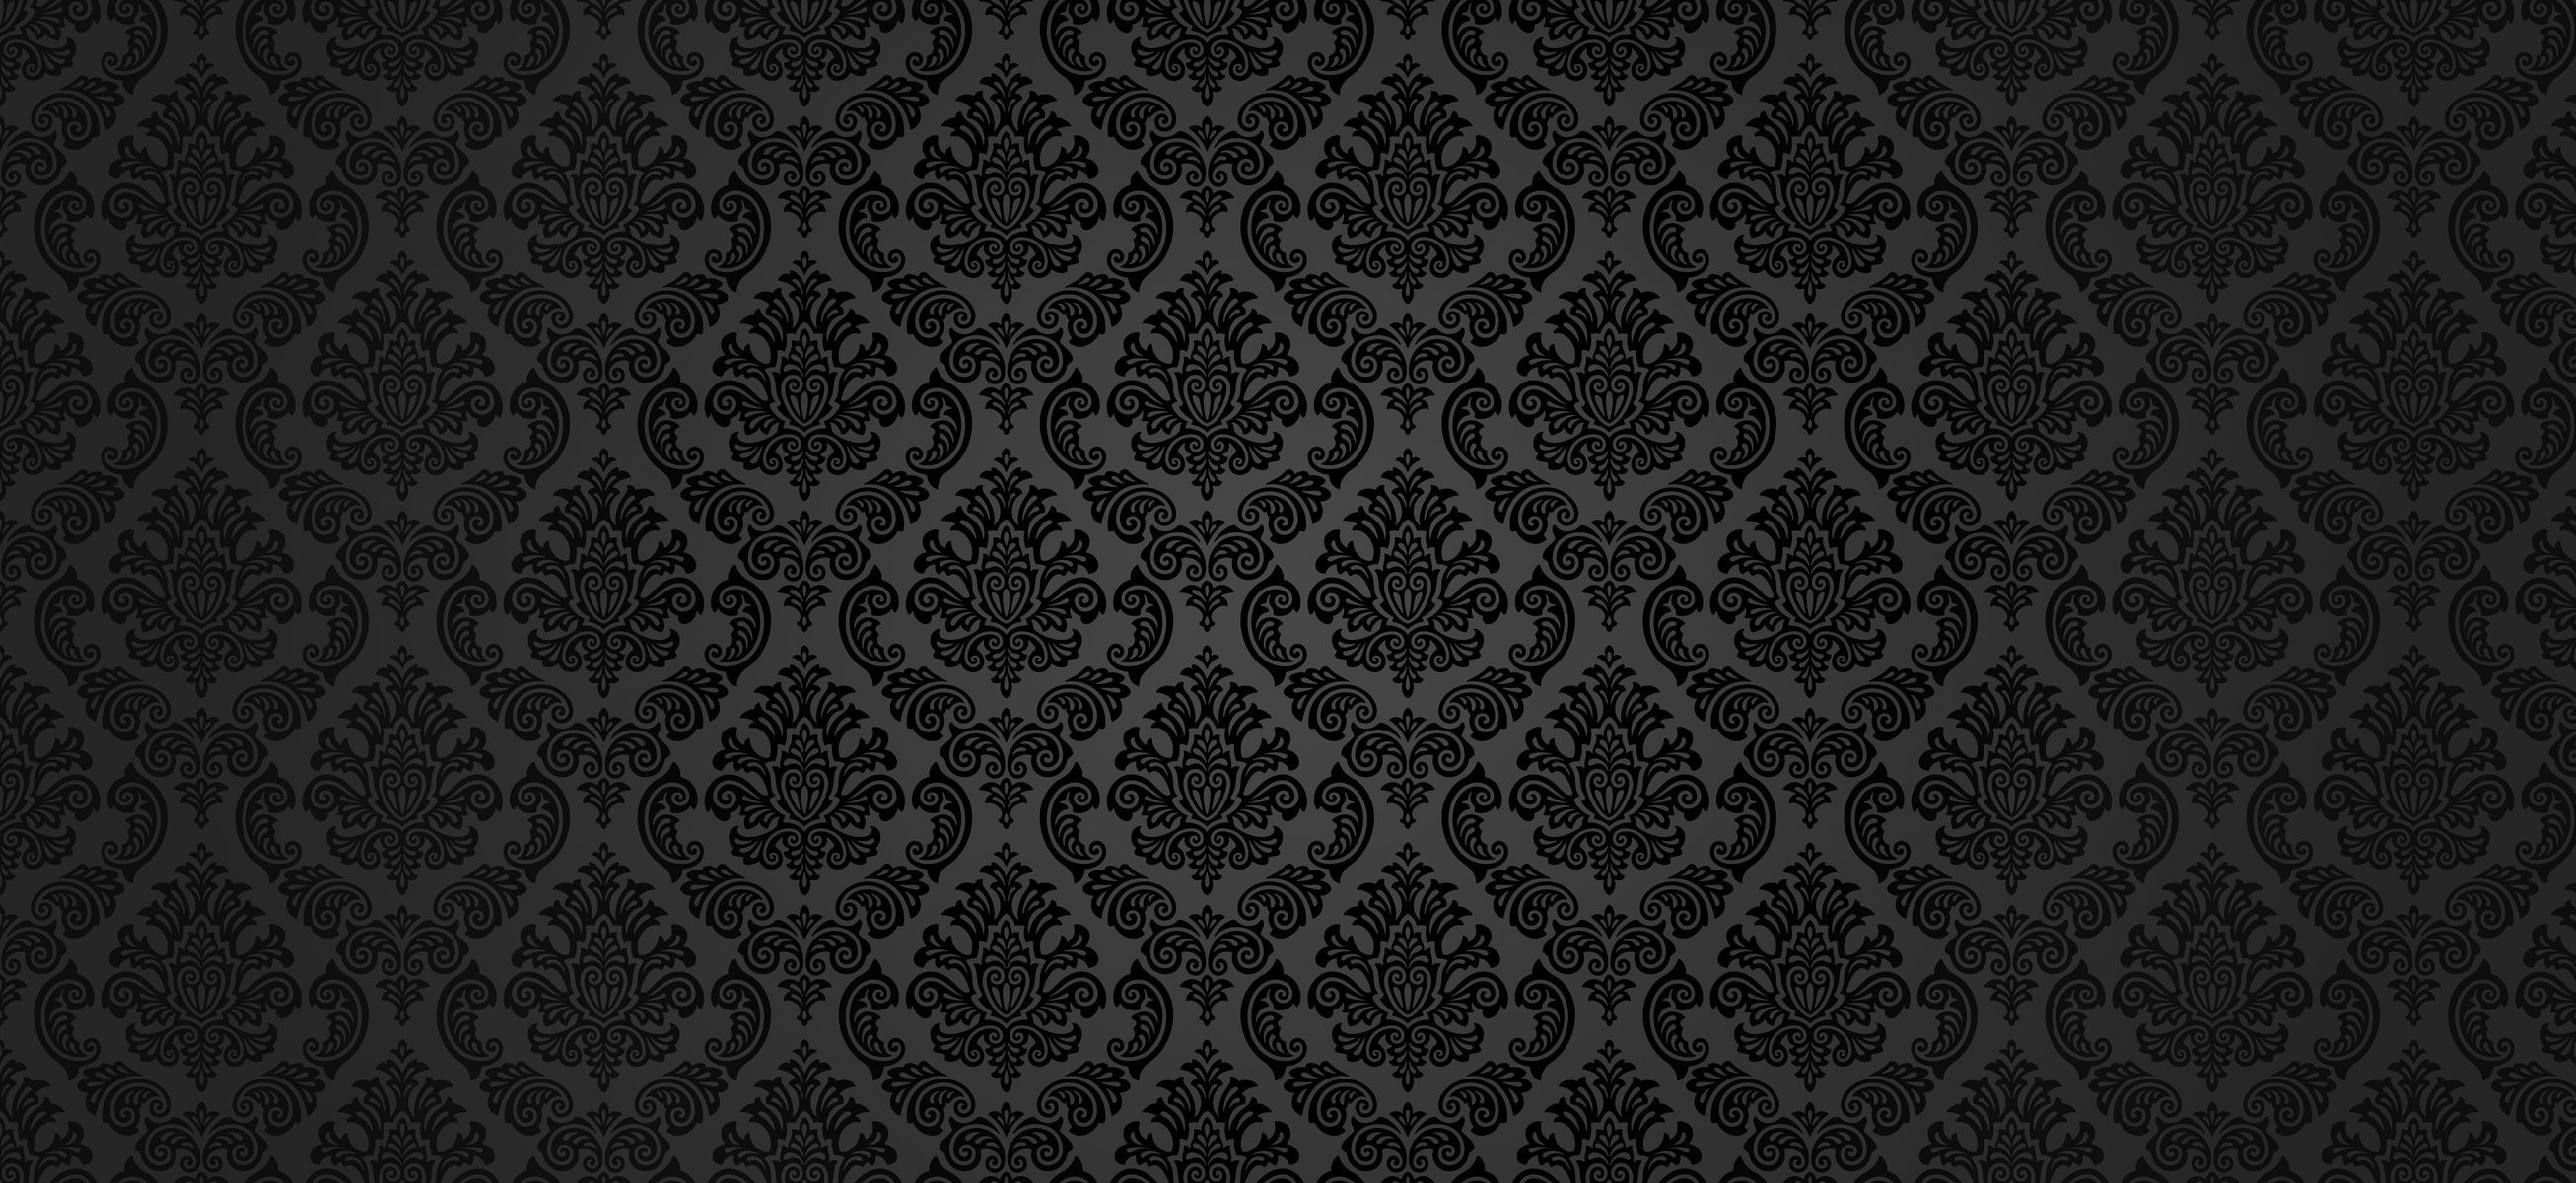 2613x1200 vector textures wallpaper vintage wallpaper vintage retro retro wallpaper  classic style grey black wallpapers desktop wallpaper